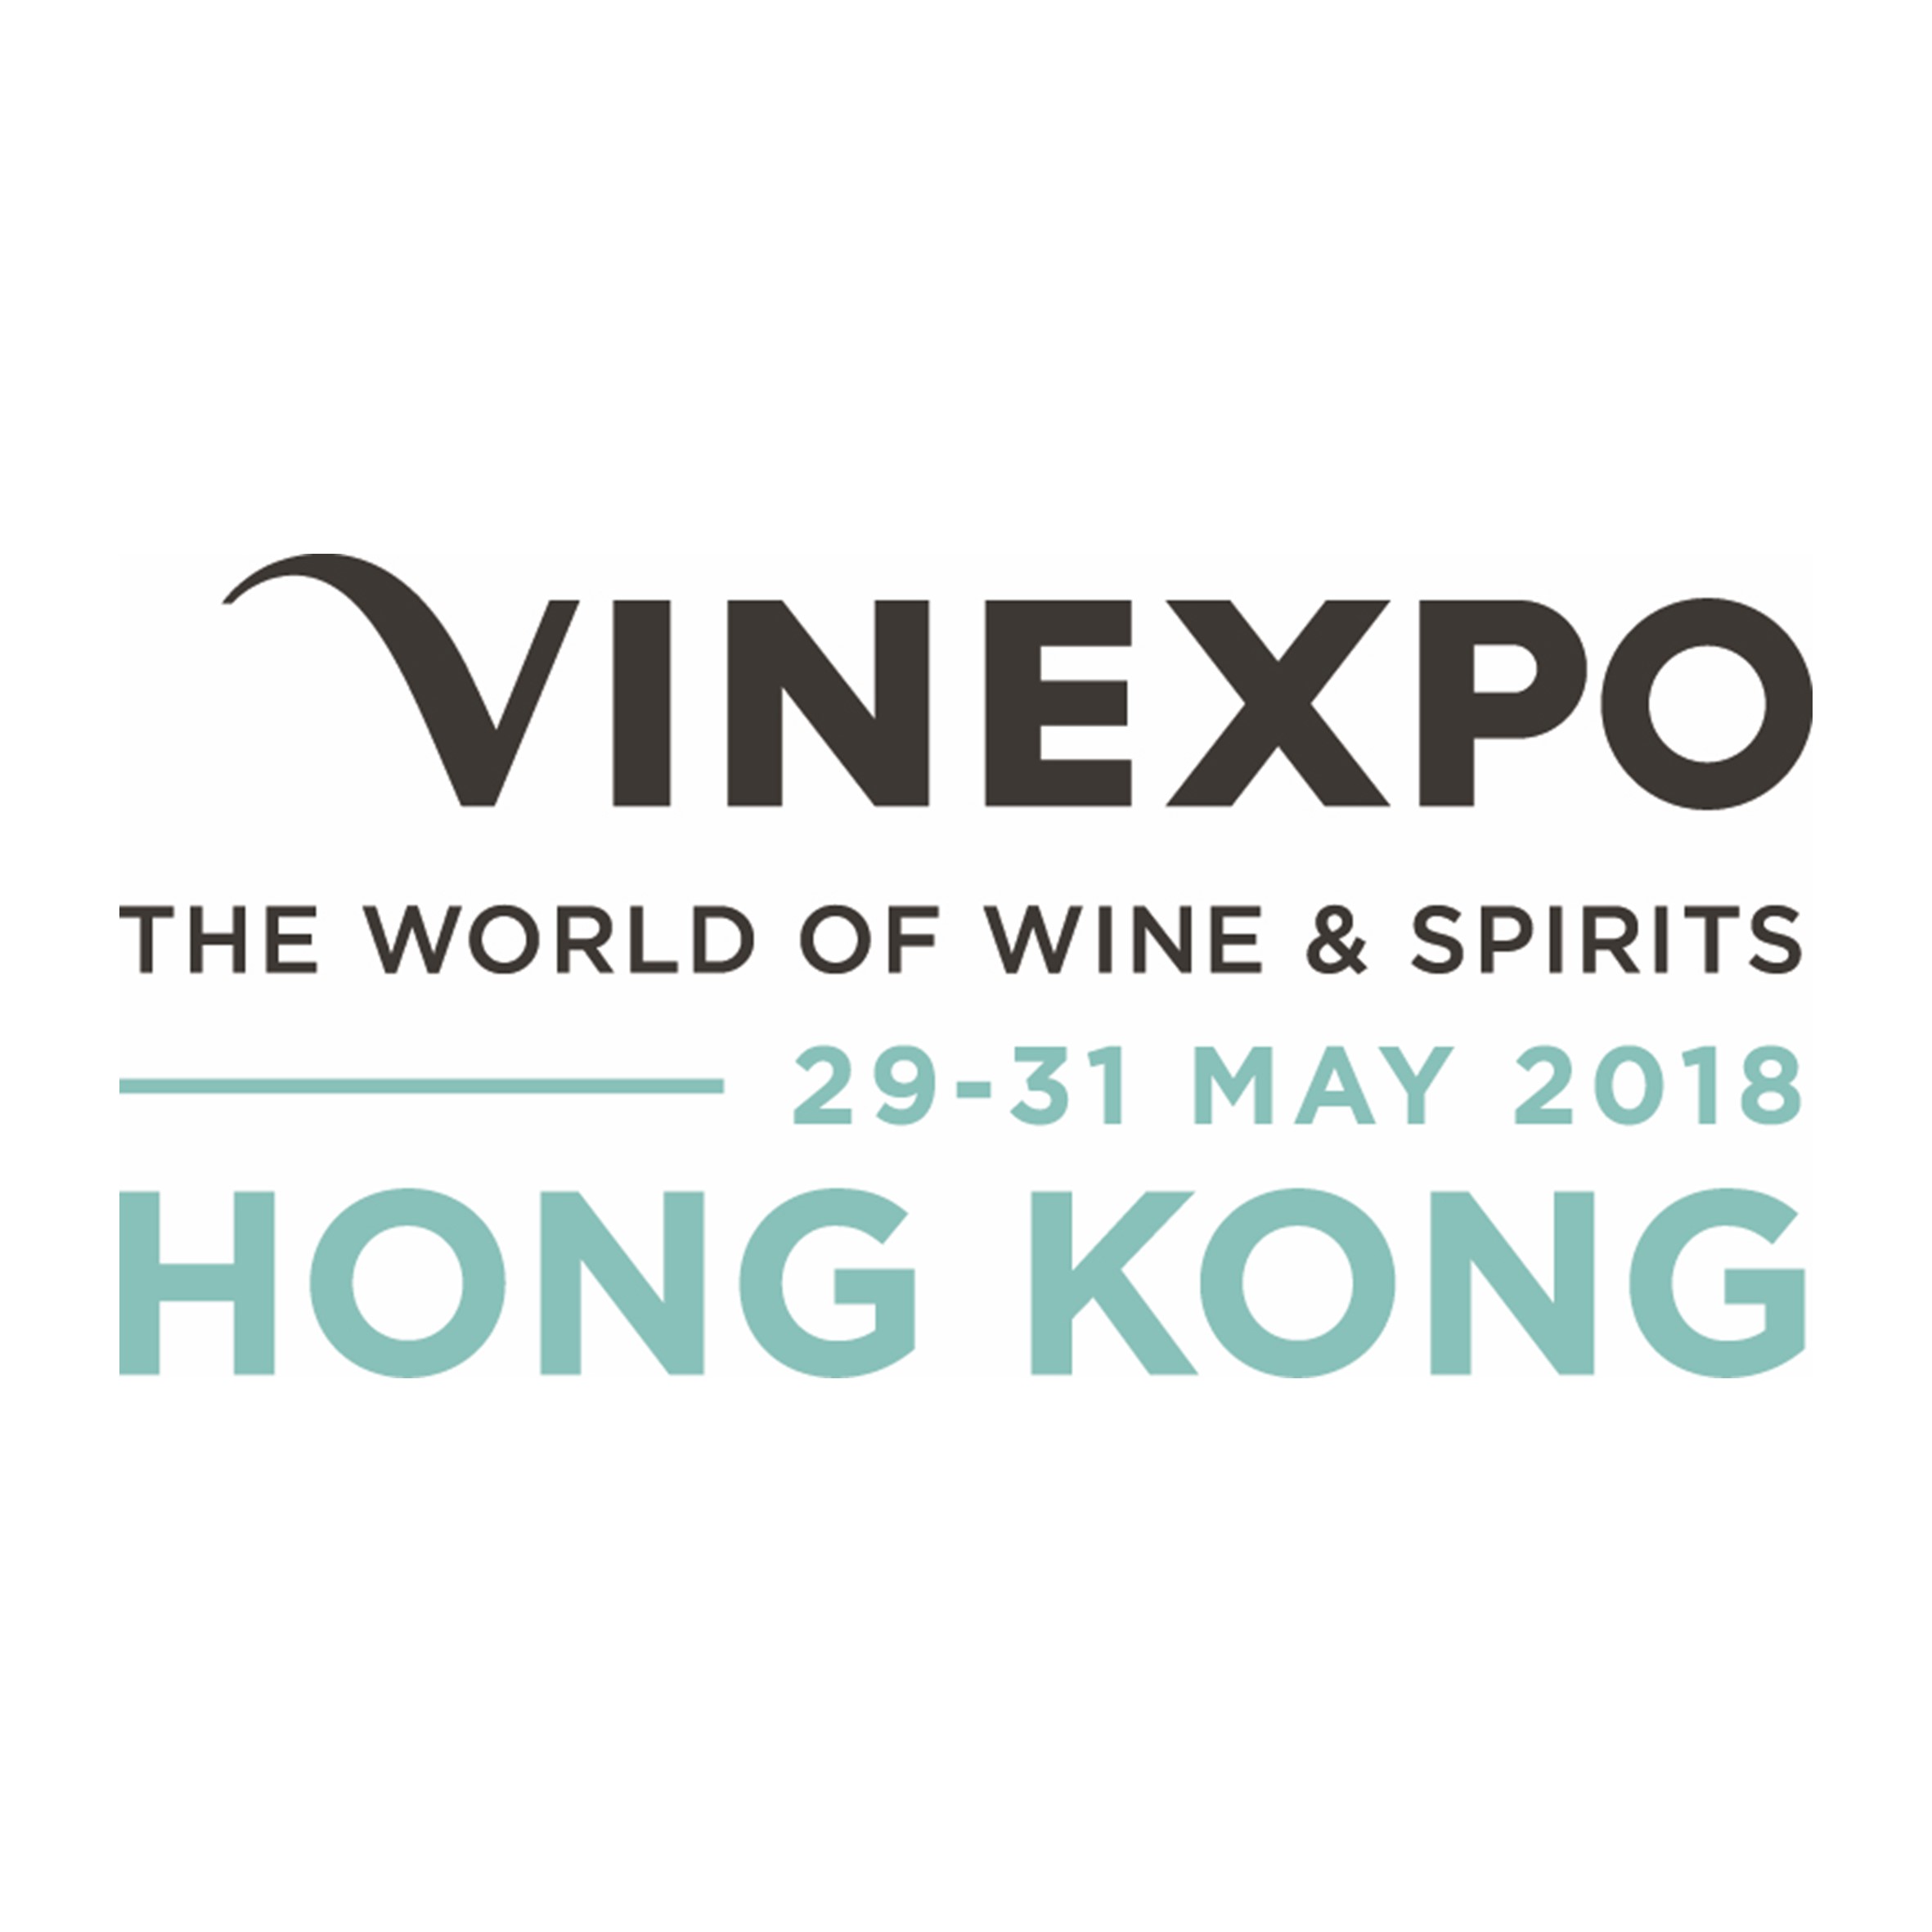 Vinexpo Hong Kong Logo 2018 - Newsletter sign up